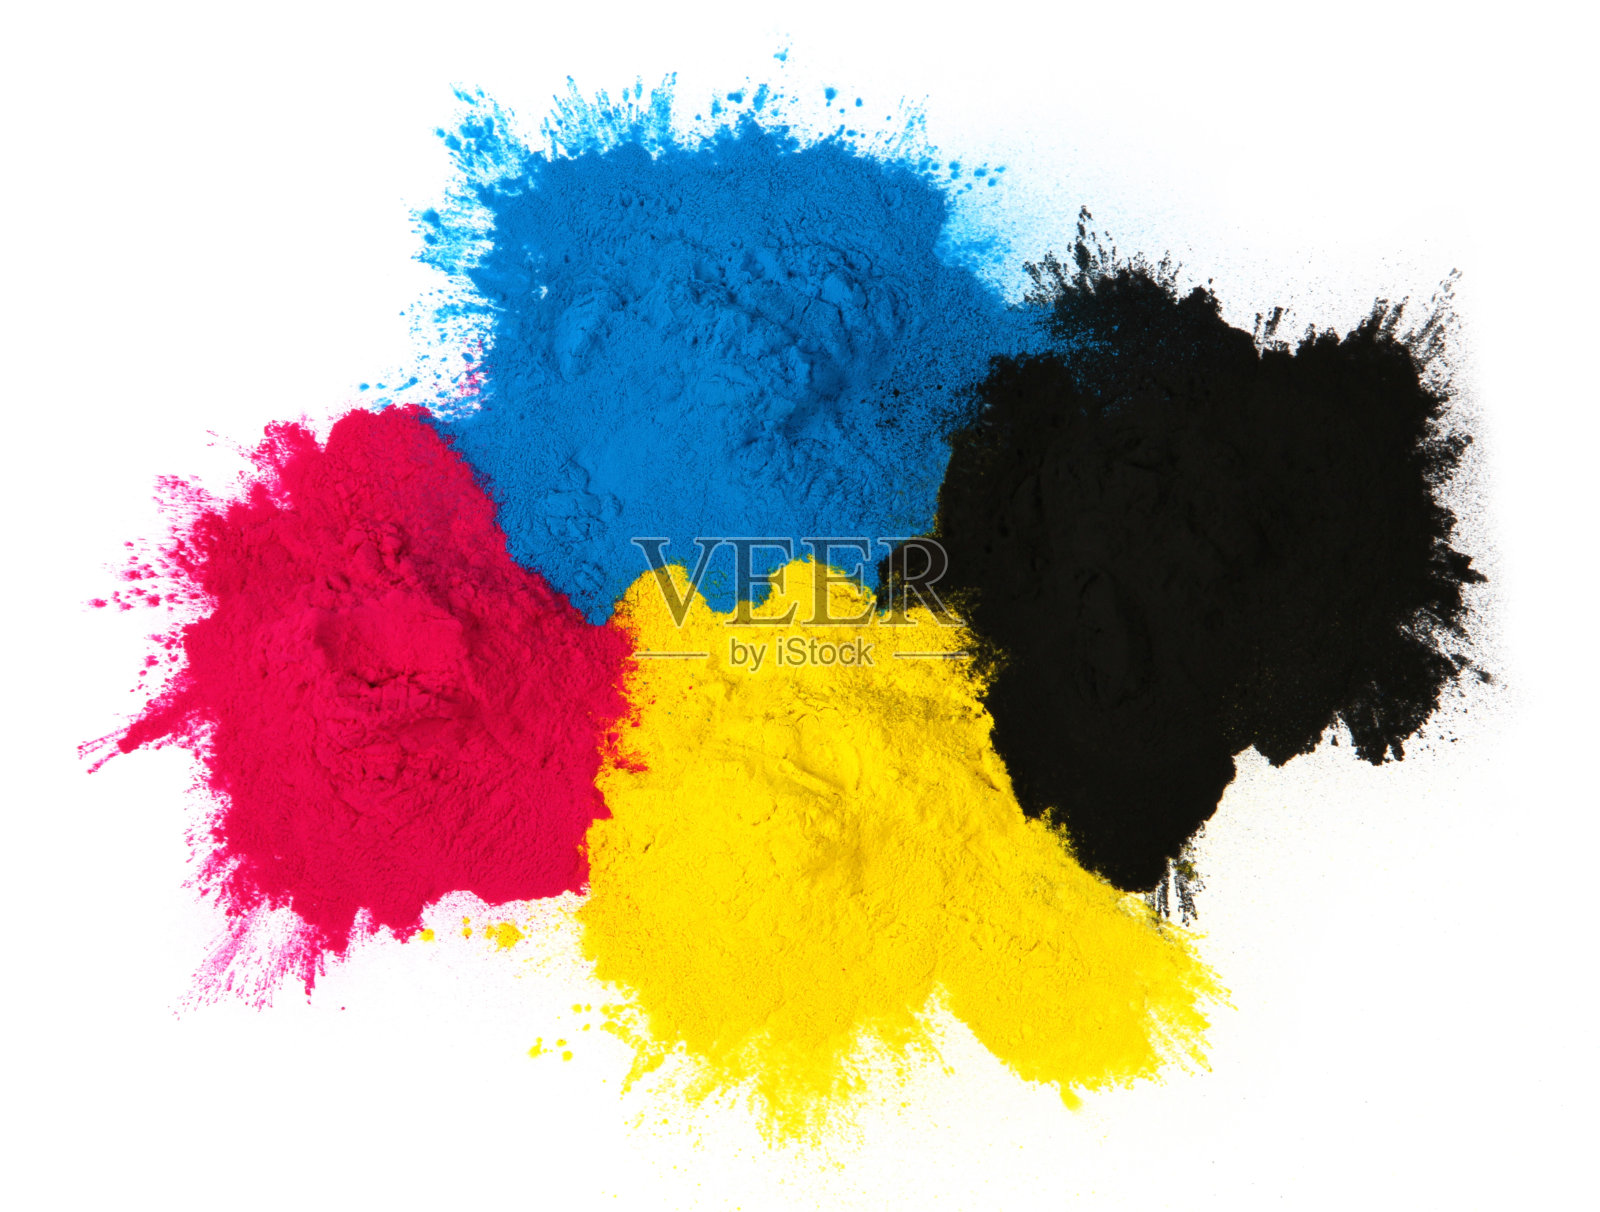 彩色复印机的调色剂，青色、品红、黄色、黑色孤立在彩色复印机的色调上照片摄影图片